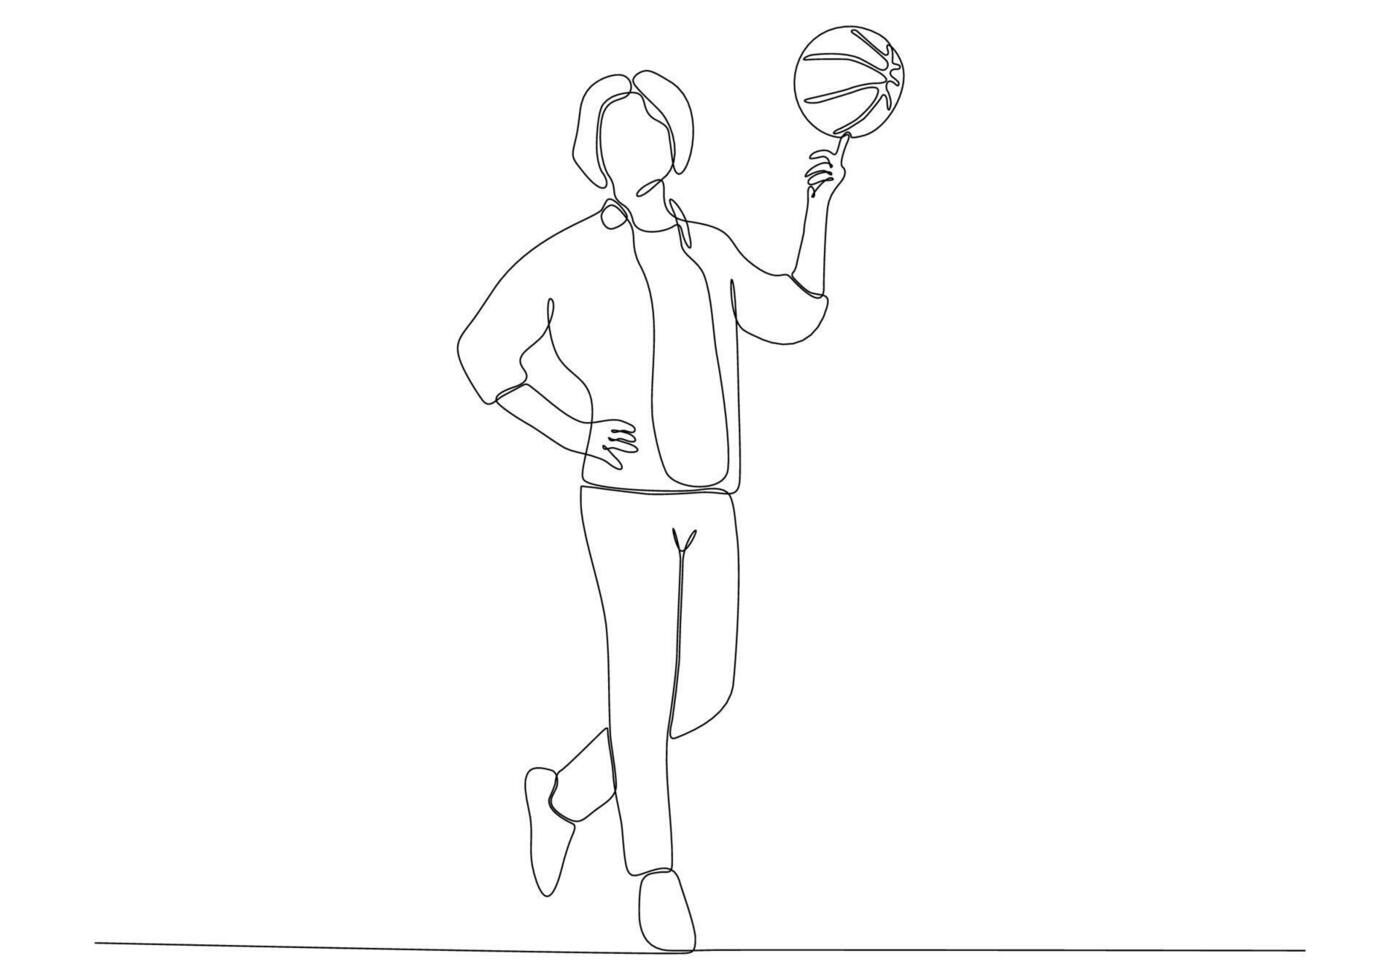 arte in linea continua dell'uomo che gioca a basket vettore